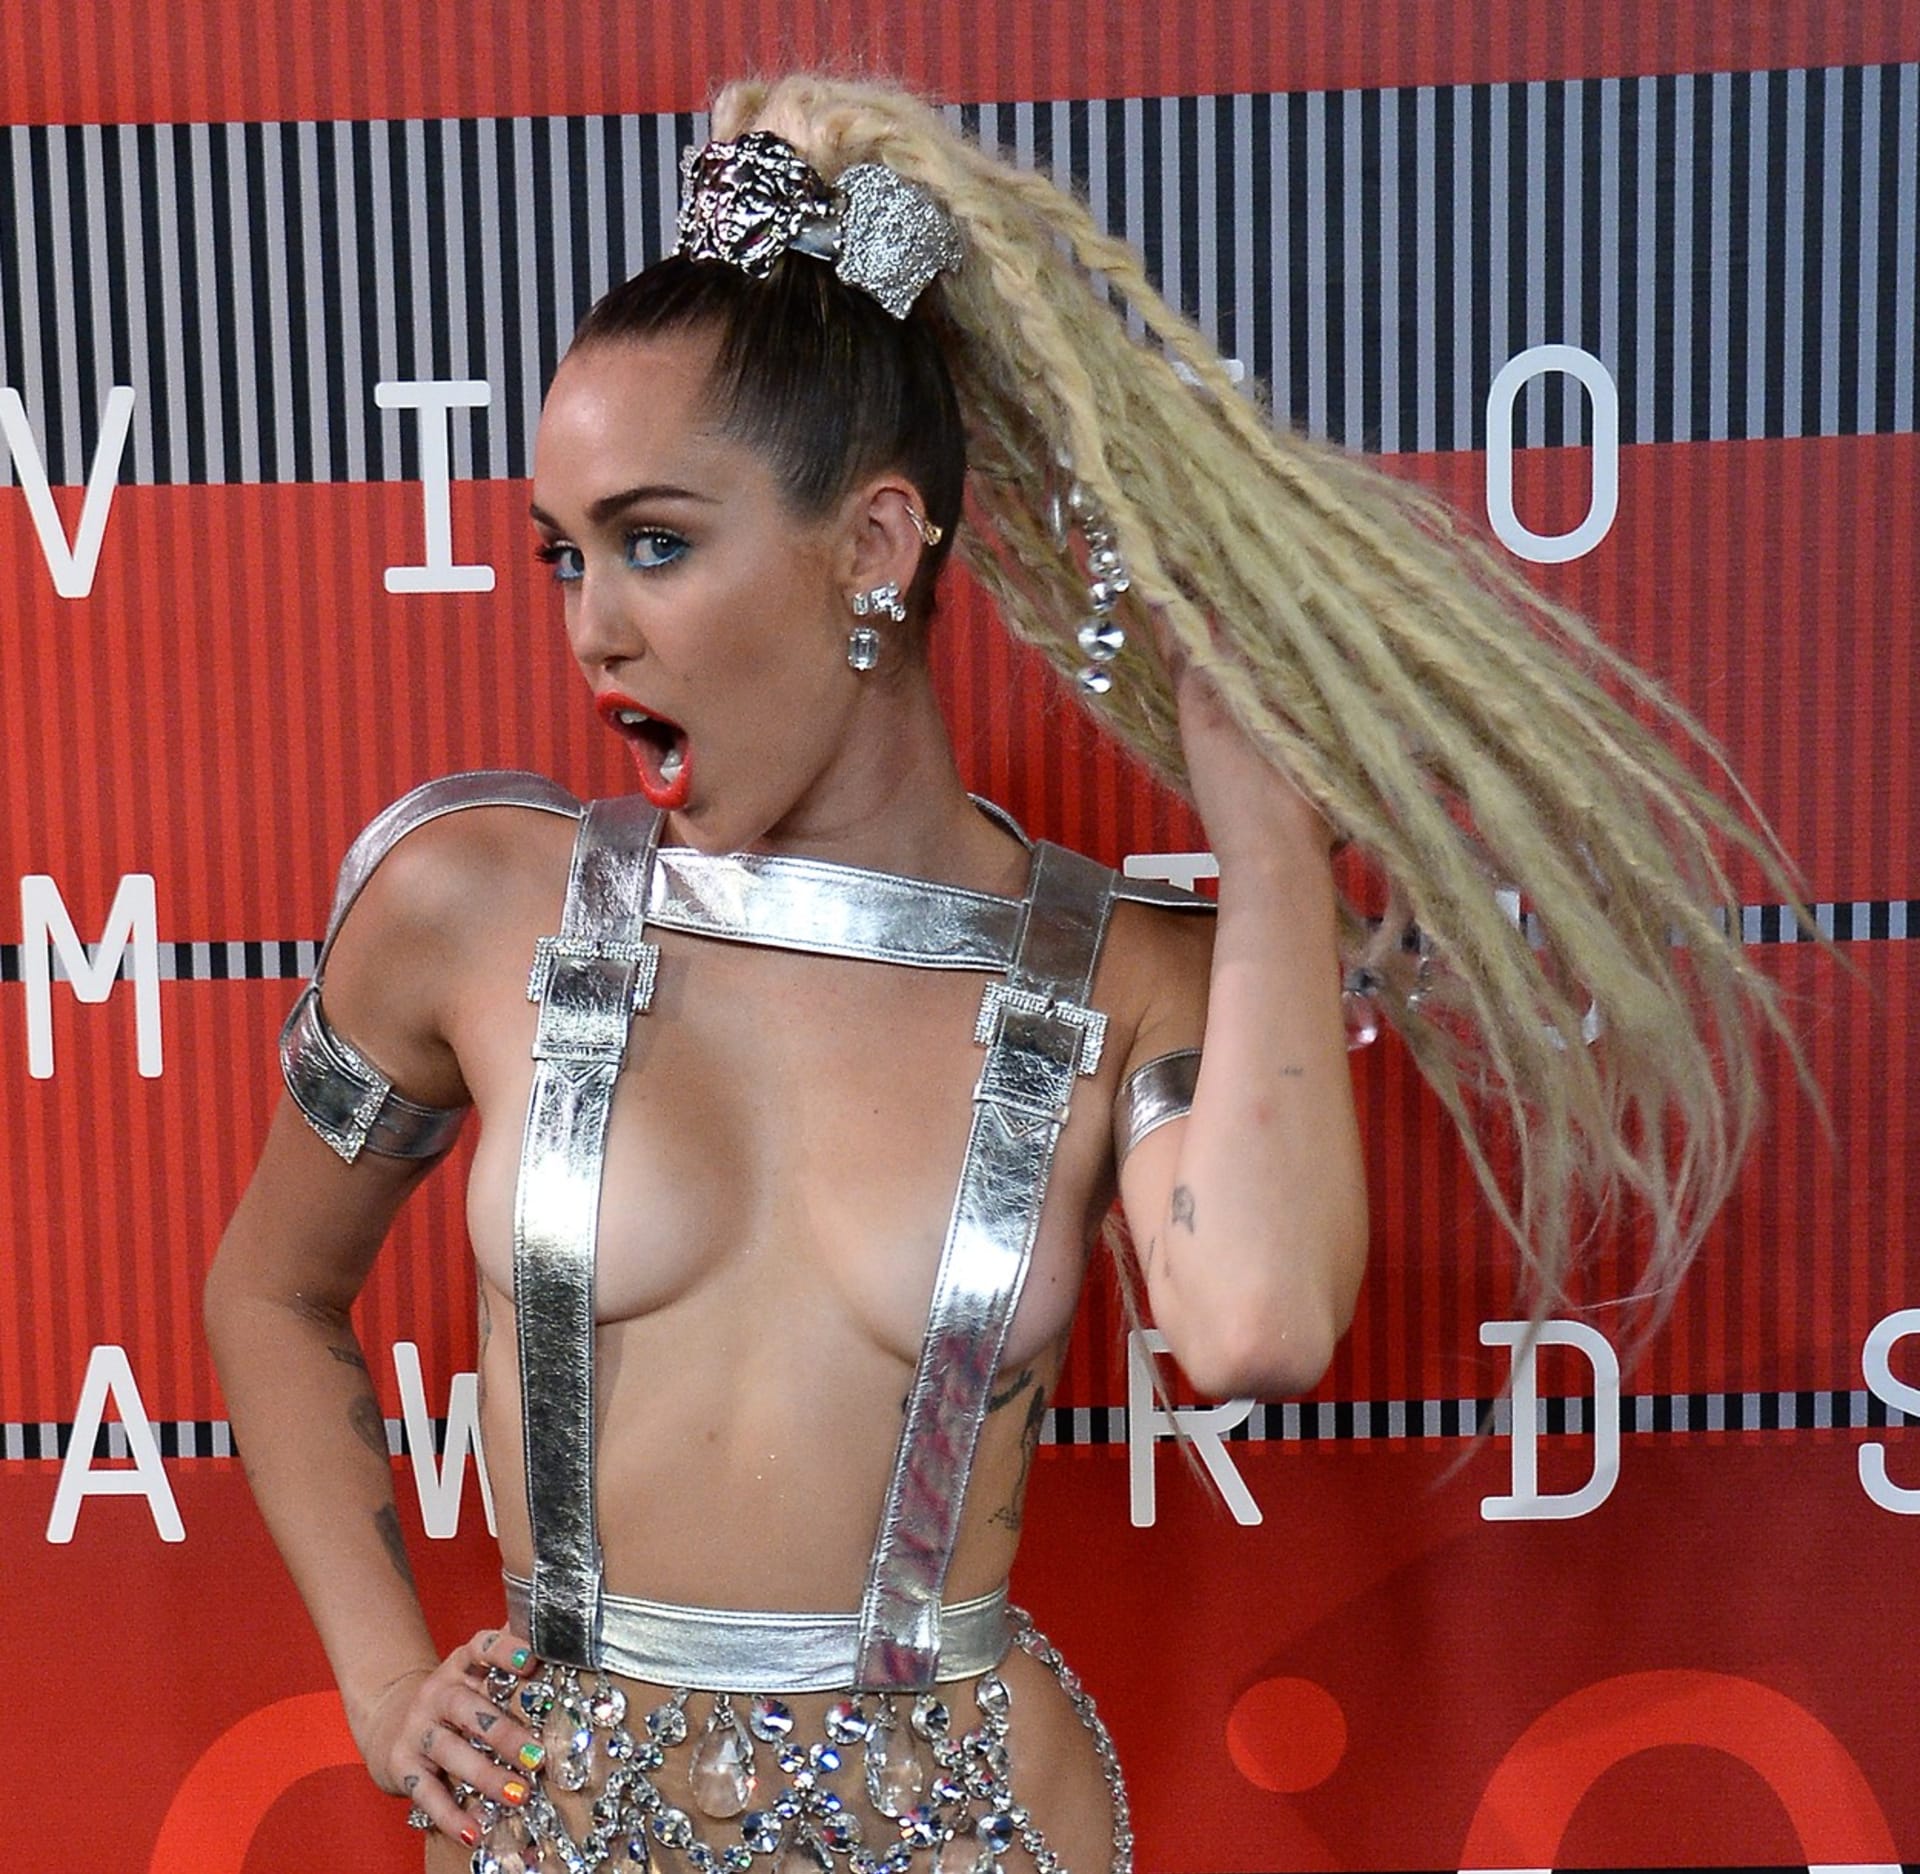 Miley tentokrát ukáže všechno a všem!